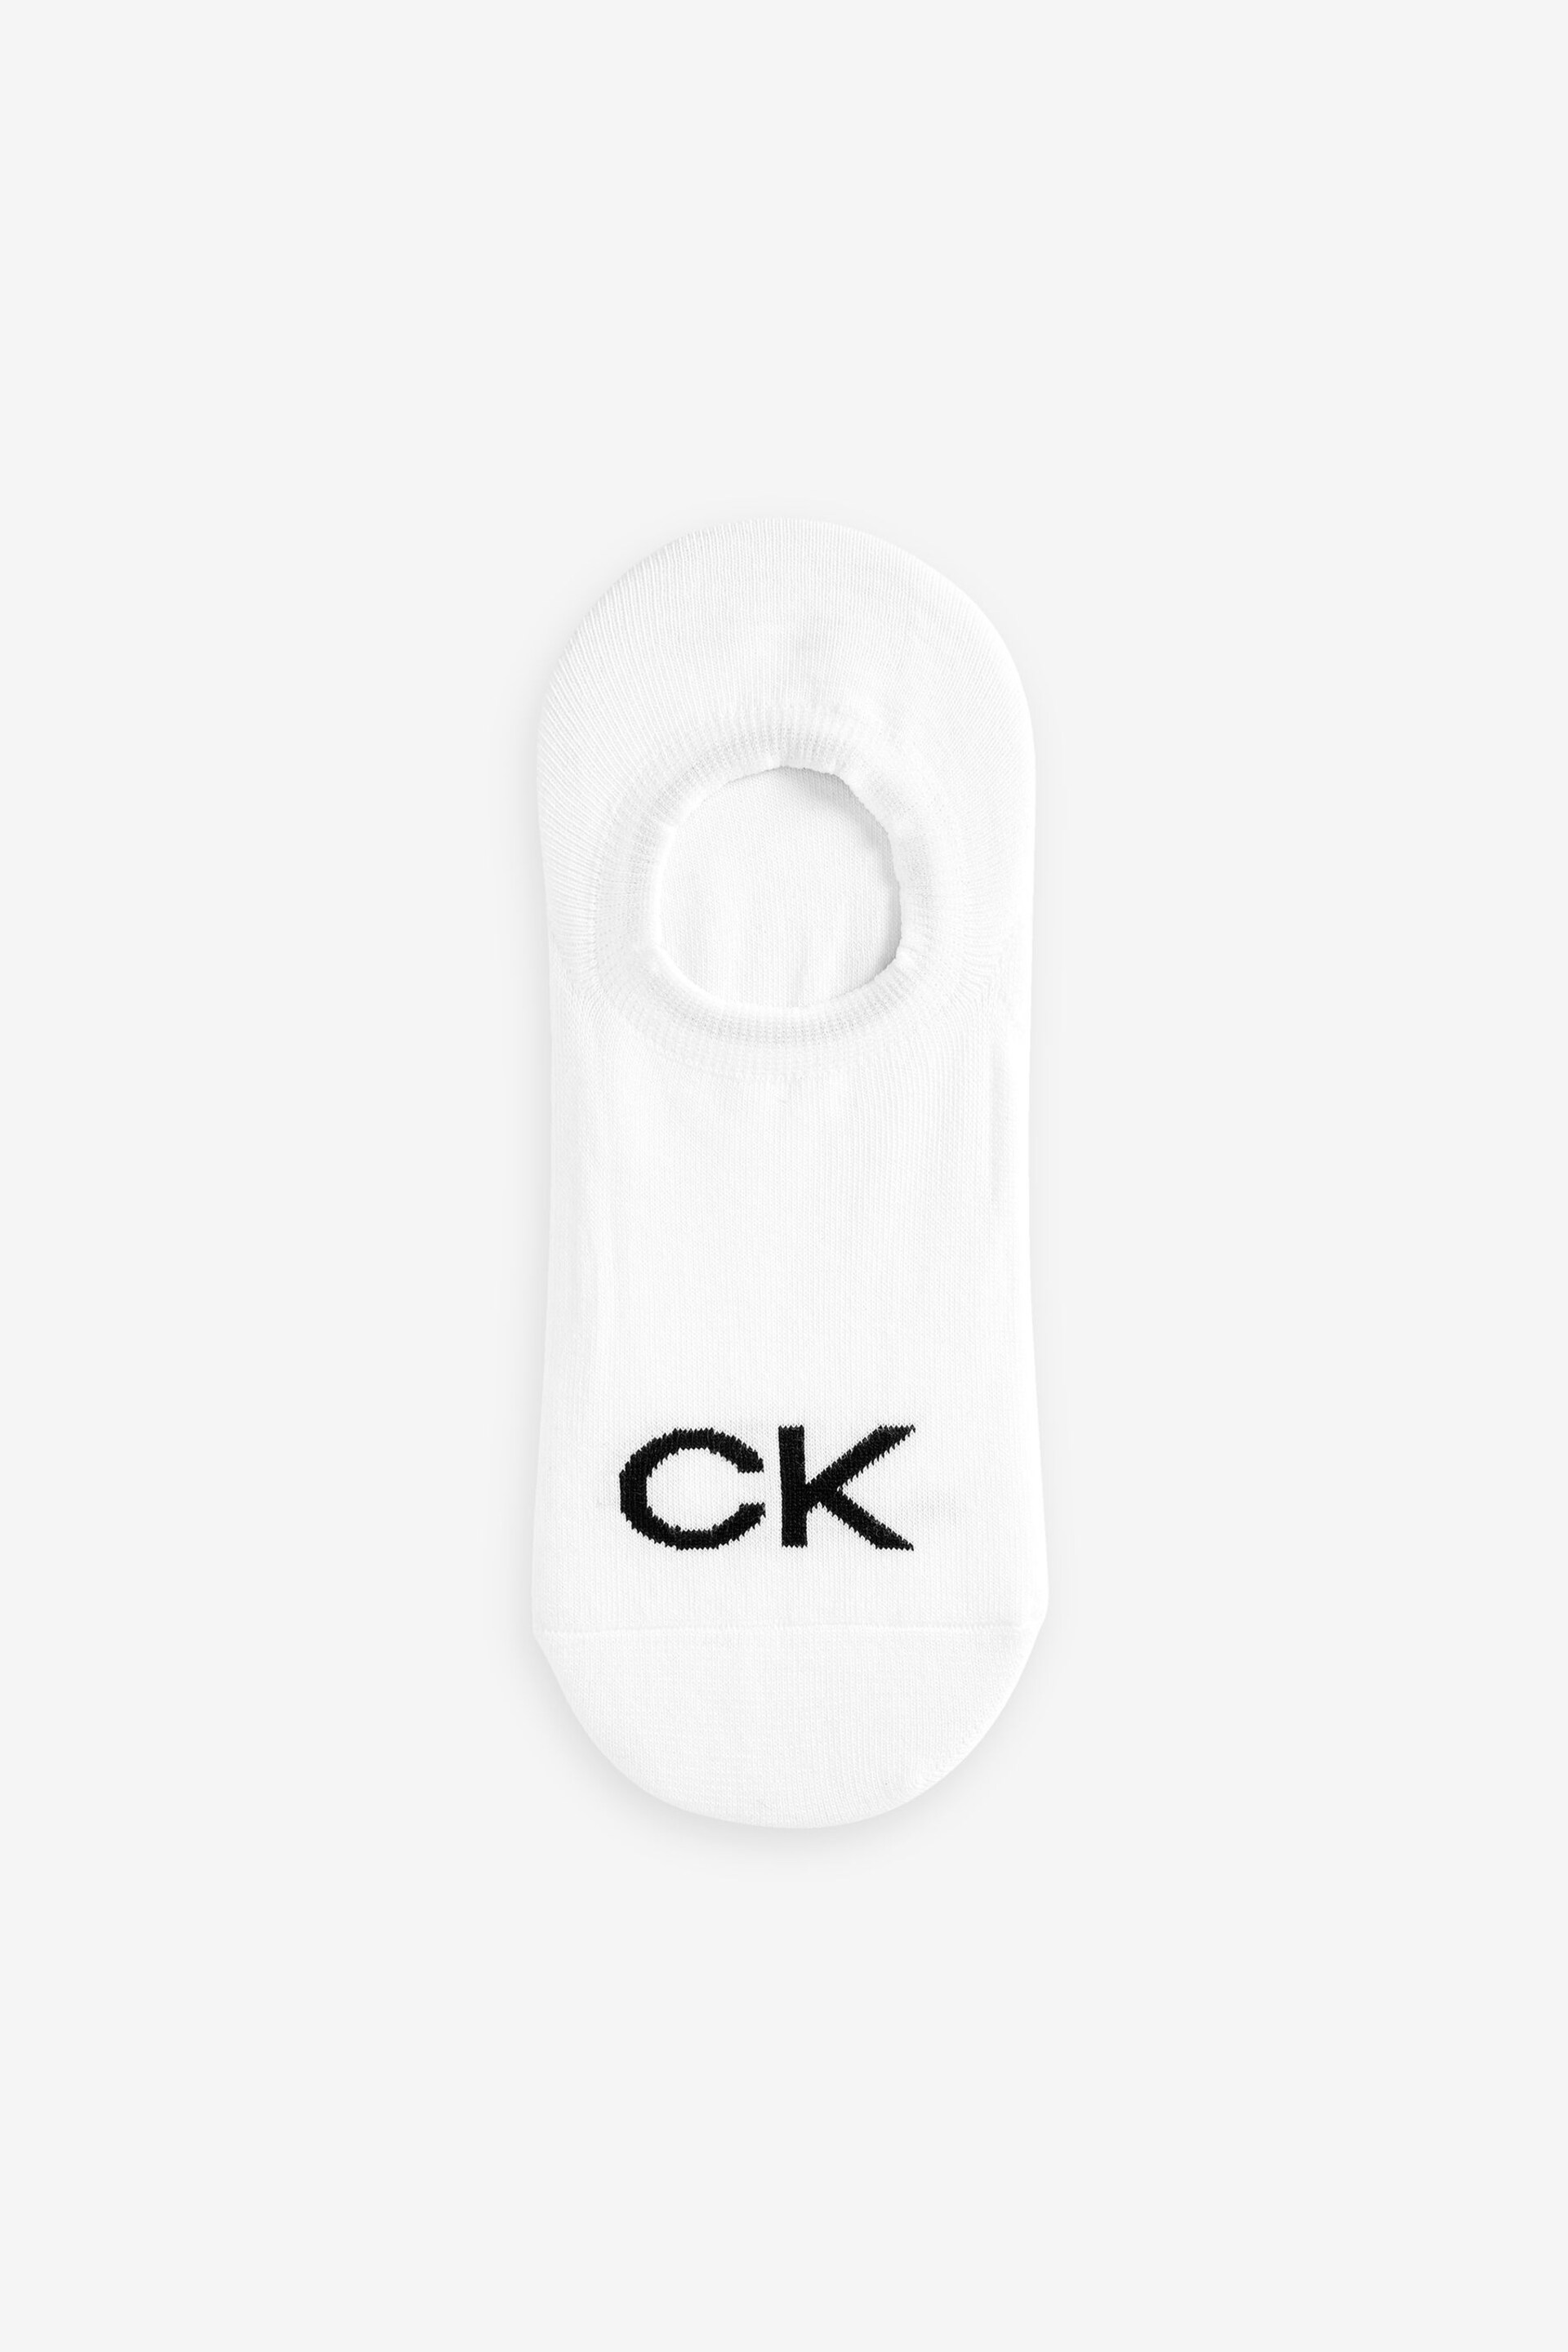 Calvin Klein White High Cut Logo Socks 3 Pack - Image 2 of 2